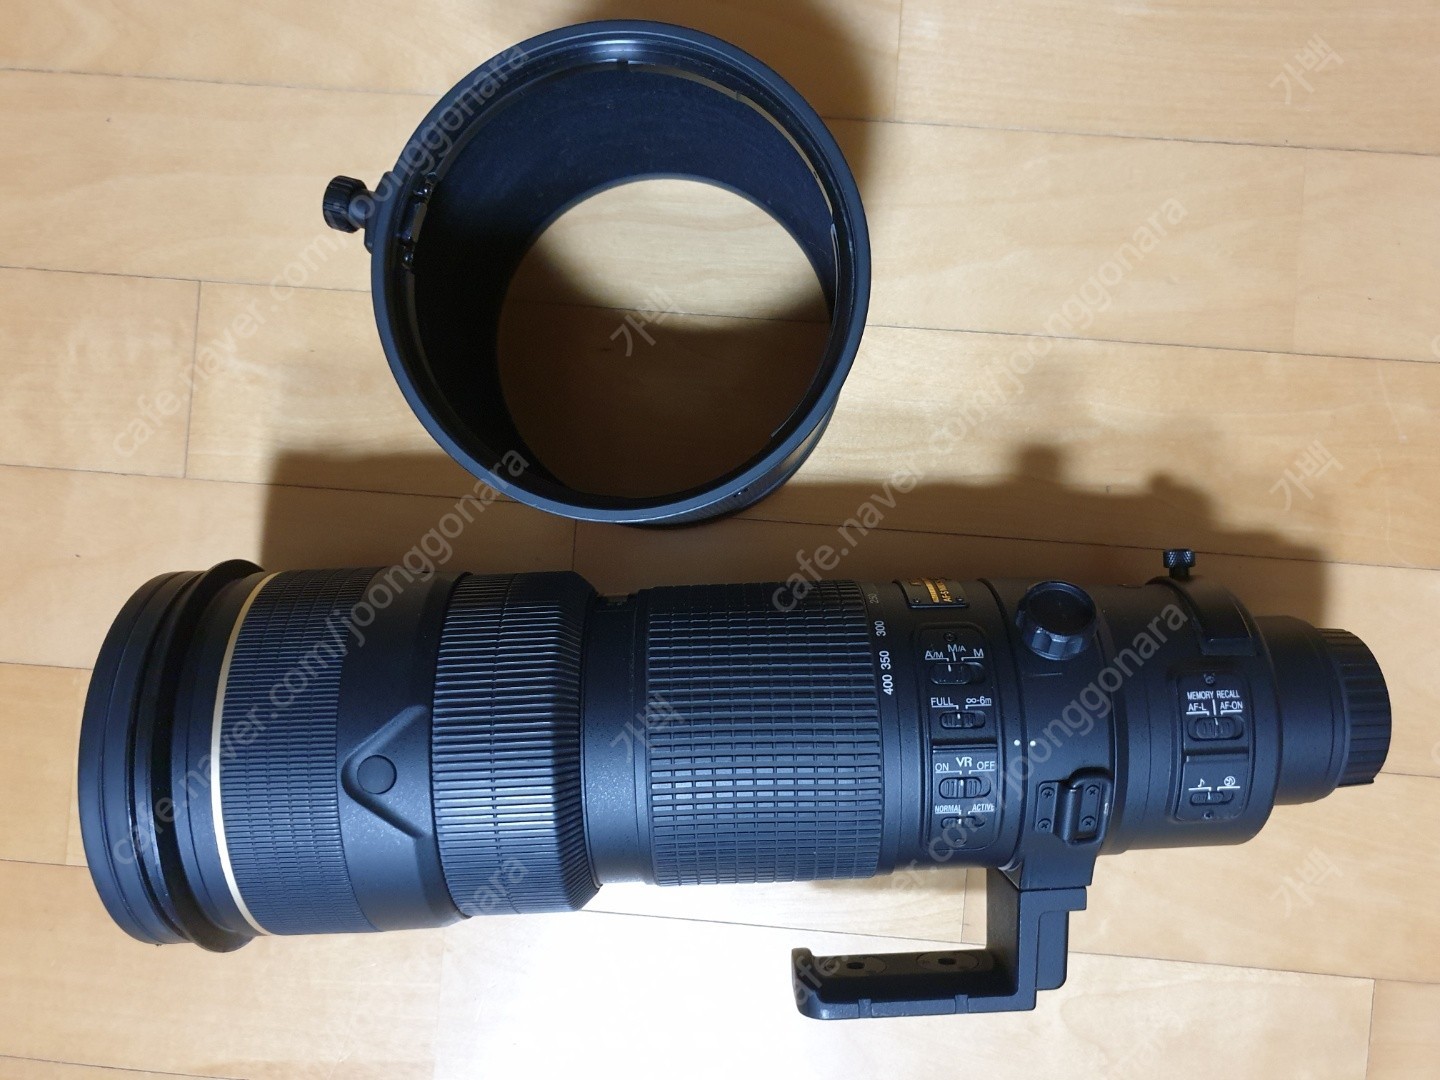 1608732015629.jpg : 니콘 NIKKOR 200-400mm f/4G ED VR II 렌즈(니콘 정품) 판매